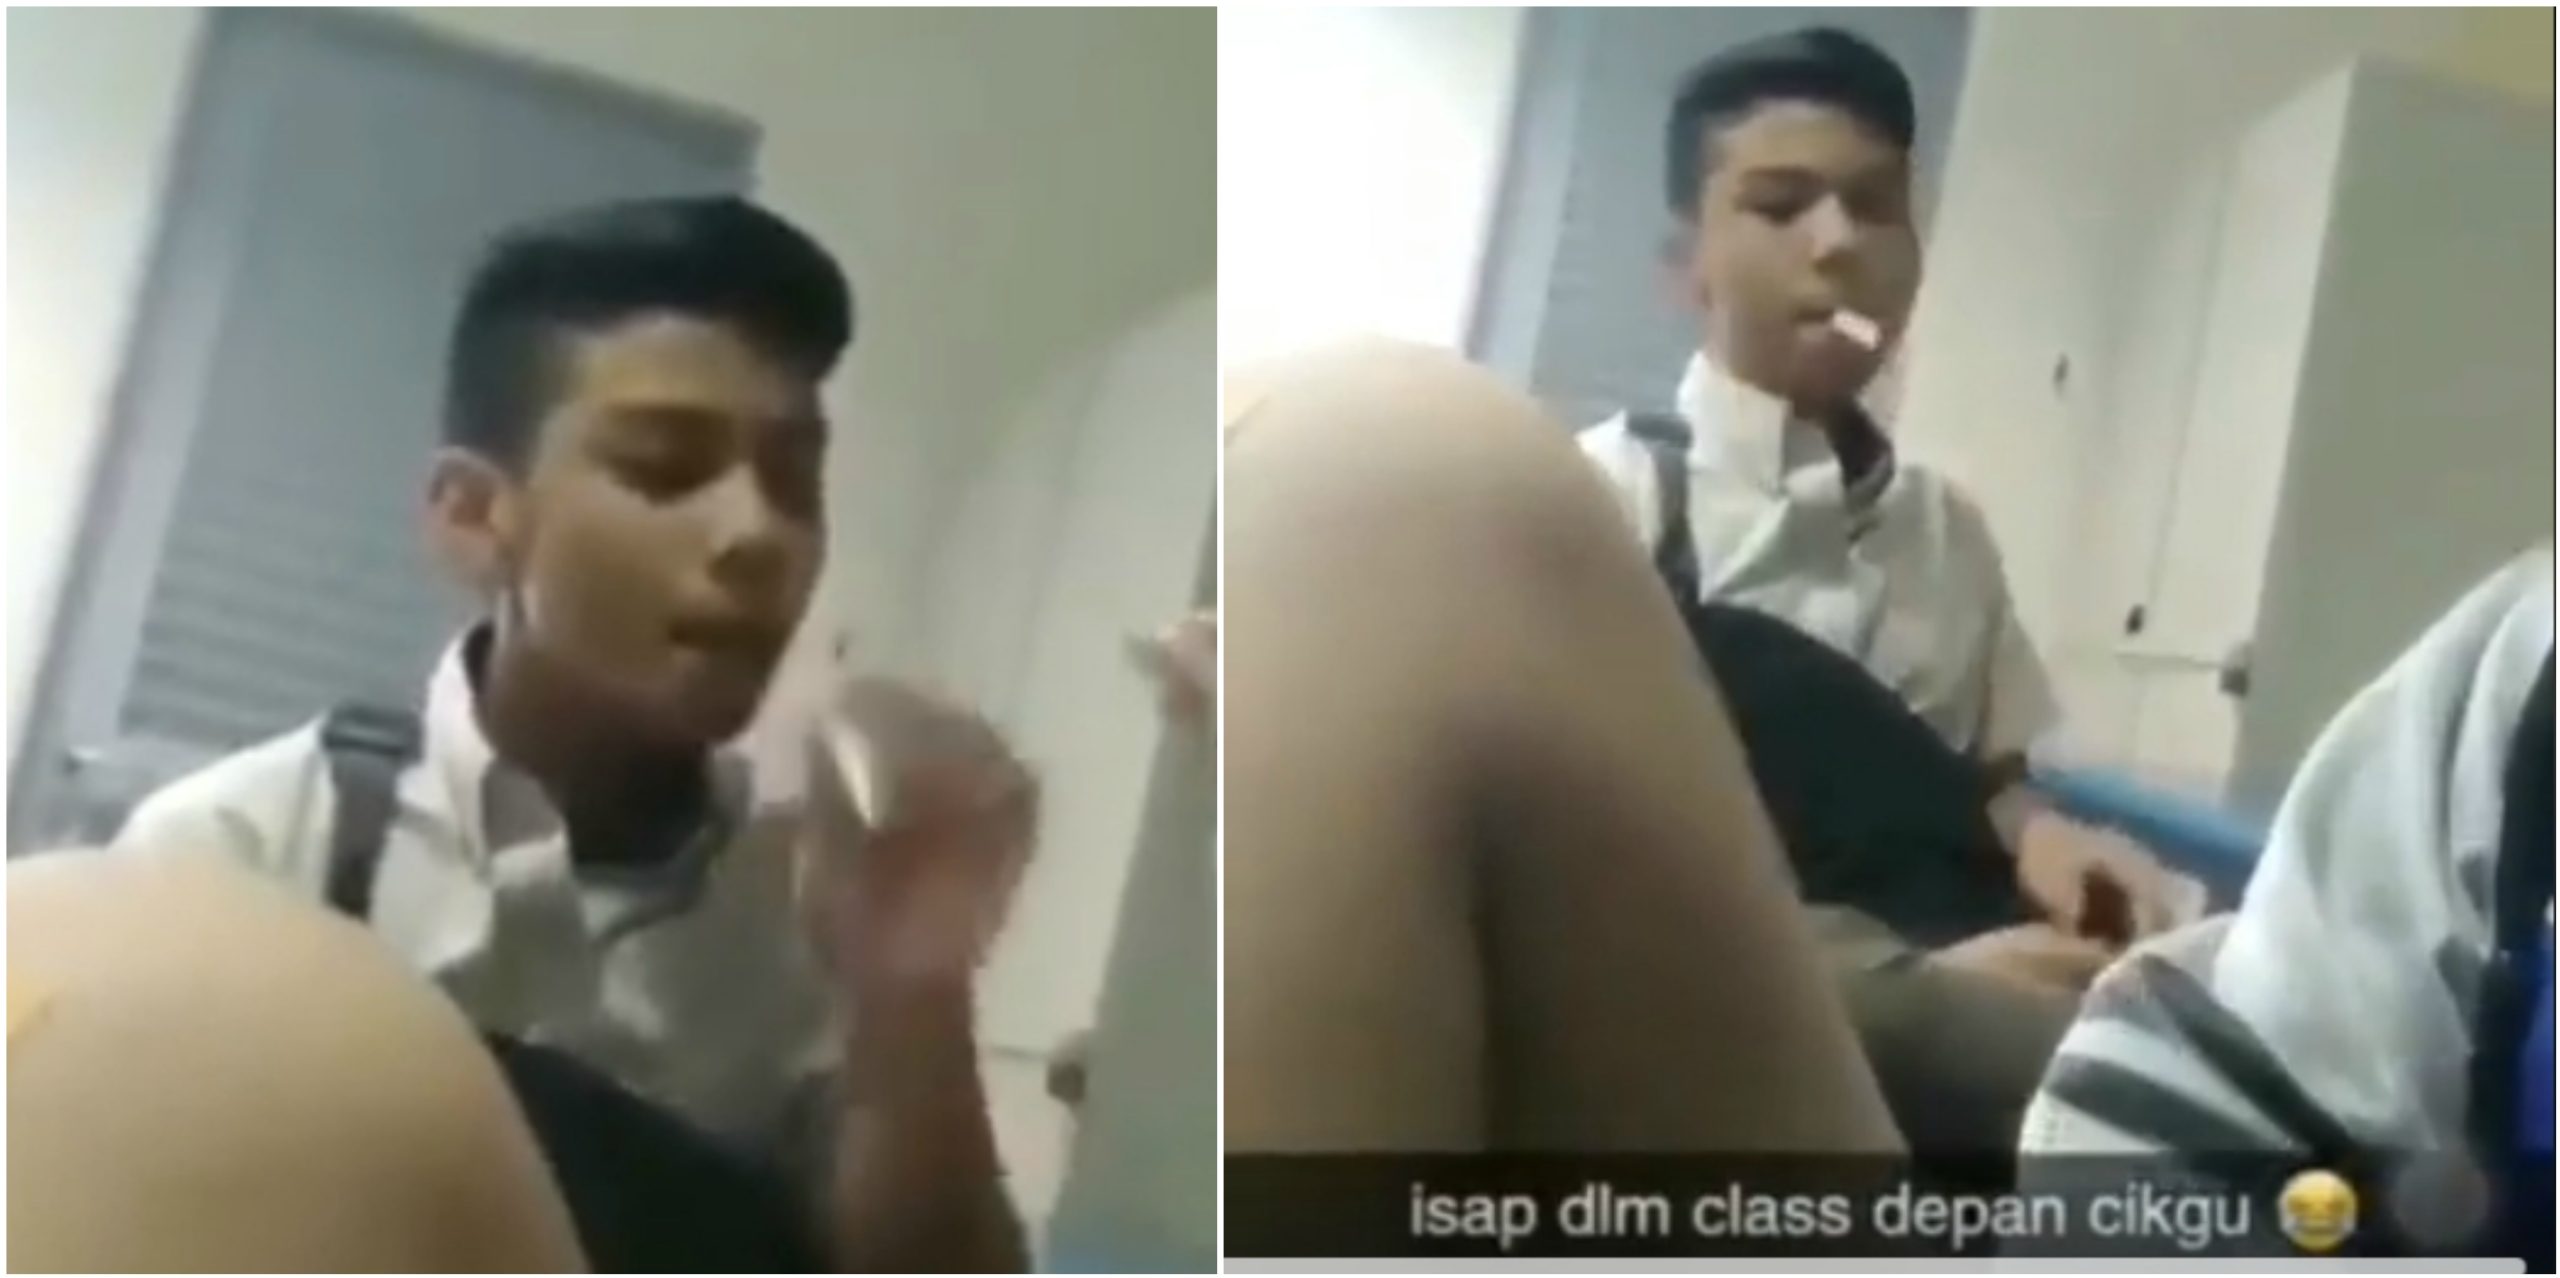 [VIDEO] ‘Kalau Cikgu Marah Cikgu Kene Maki’ – Hisap Rokok Dalam Kelas, Netizen Sifatkan Pelajar Ini Biadap